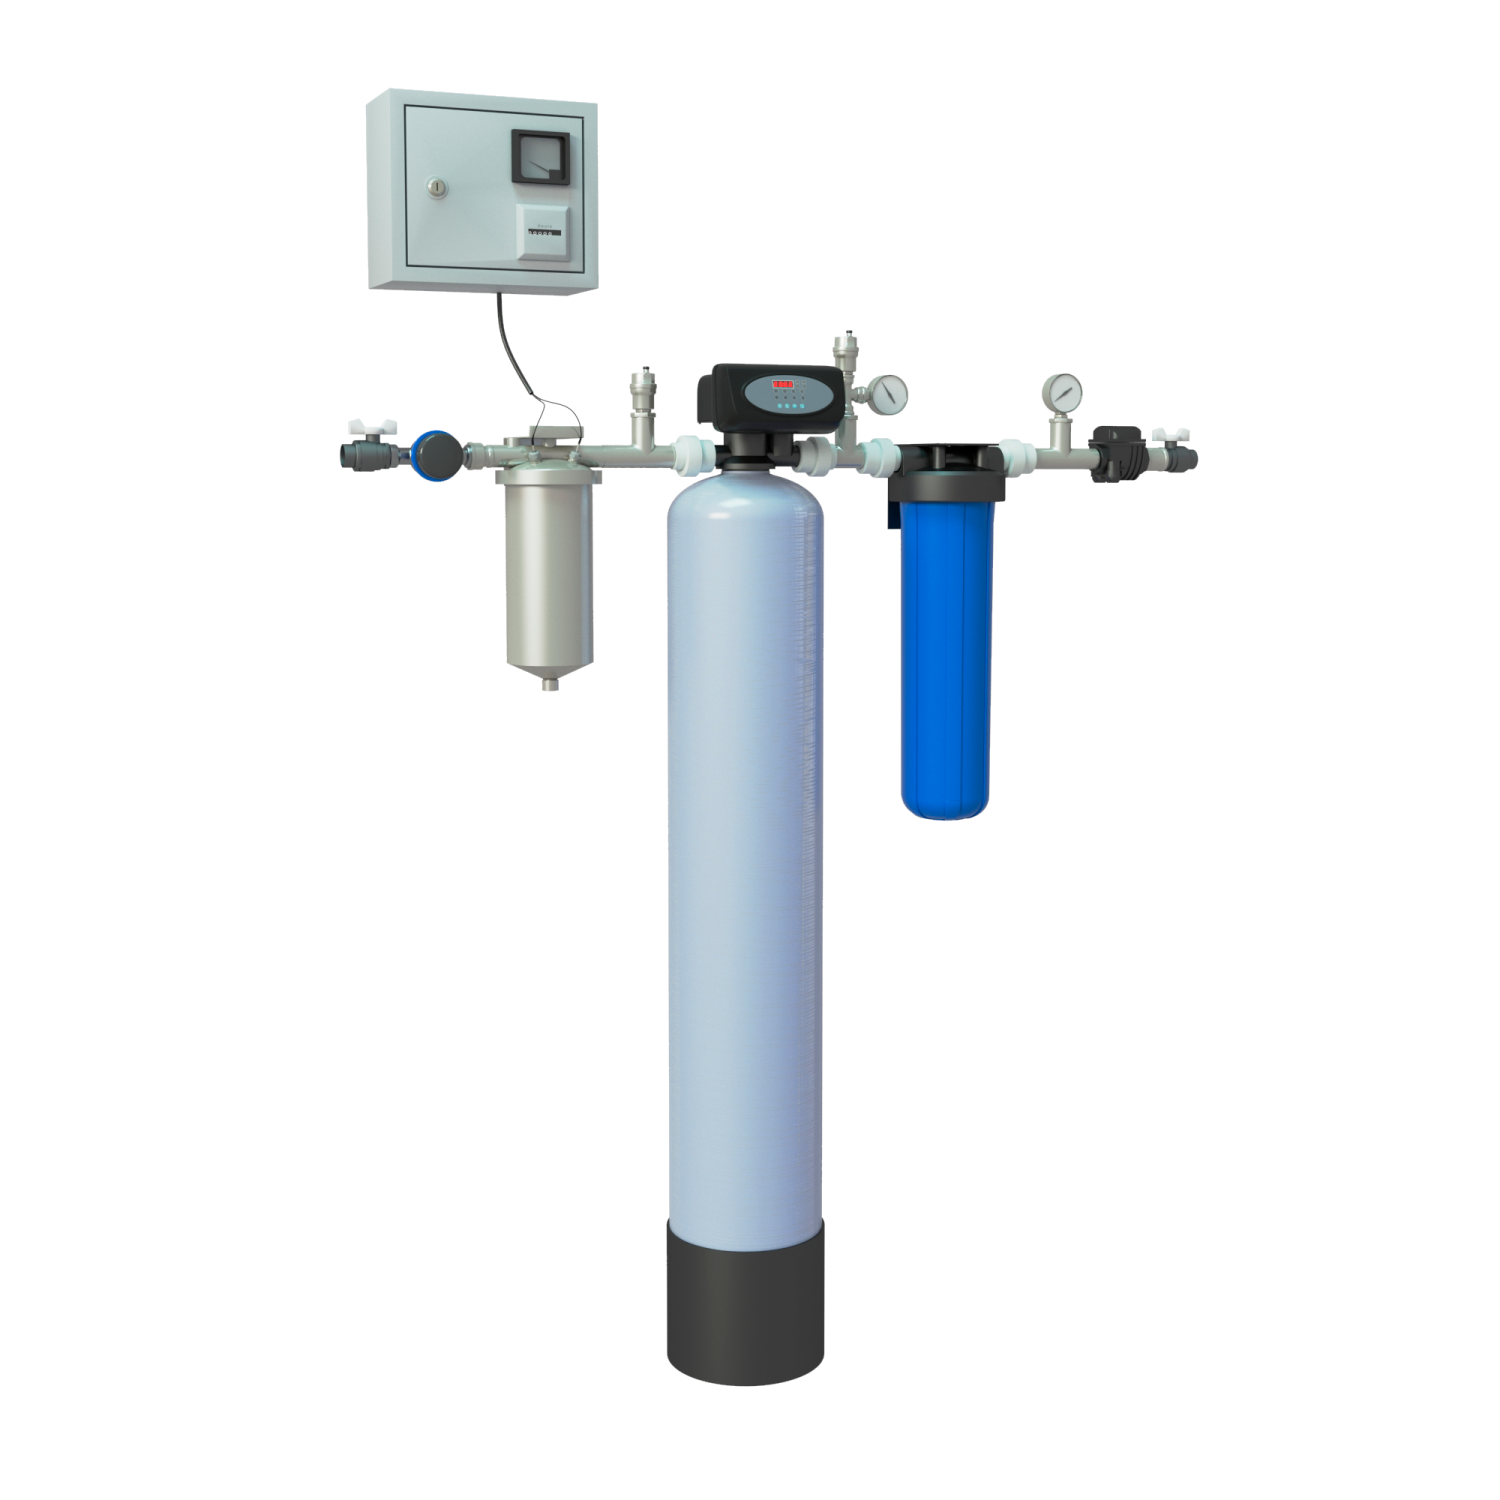 Pro очистка воды. Система обезжелезивания воды mvac536c. Экволс шкаф Титан 24. Комплектующие на колонну водоочистки 1354. Система обезжелезивания мс1054.